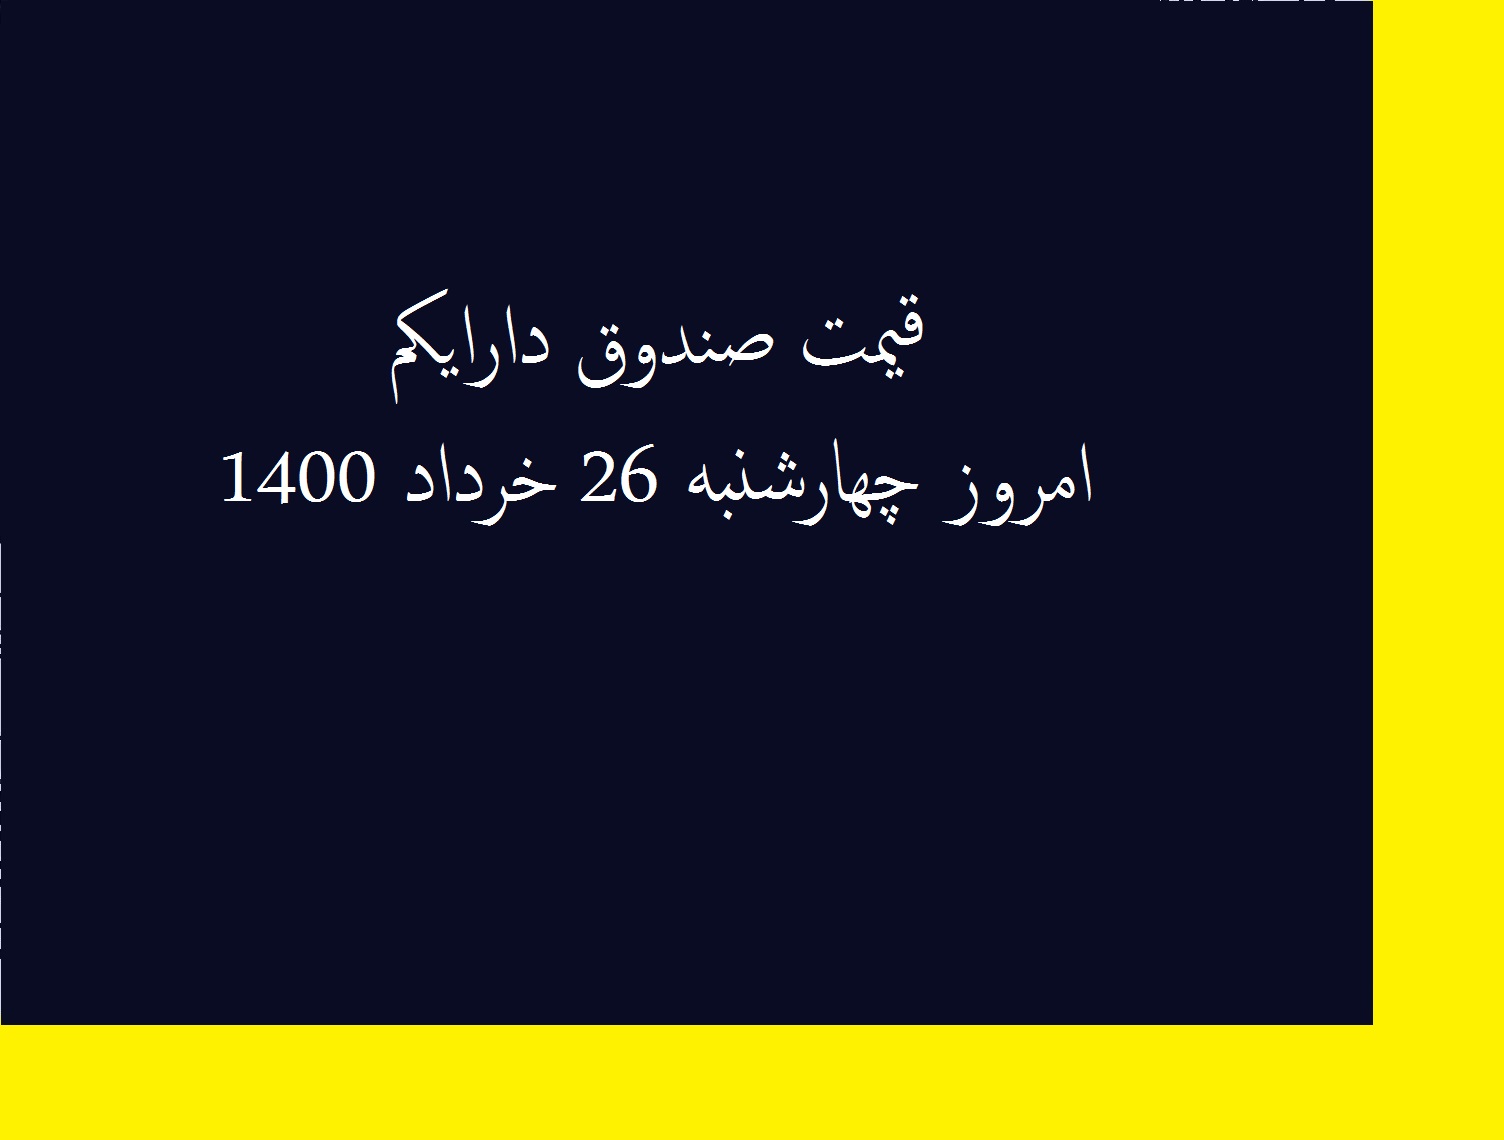 قیمت صندوق دارایکم امروز چهارشنبه 26 خرداد 1400